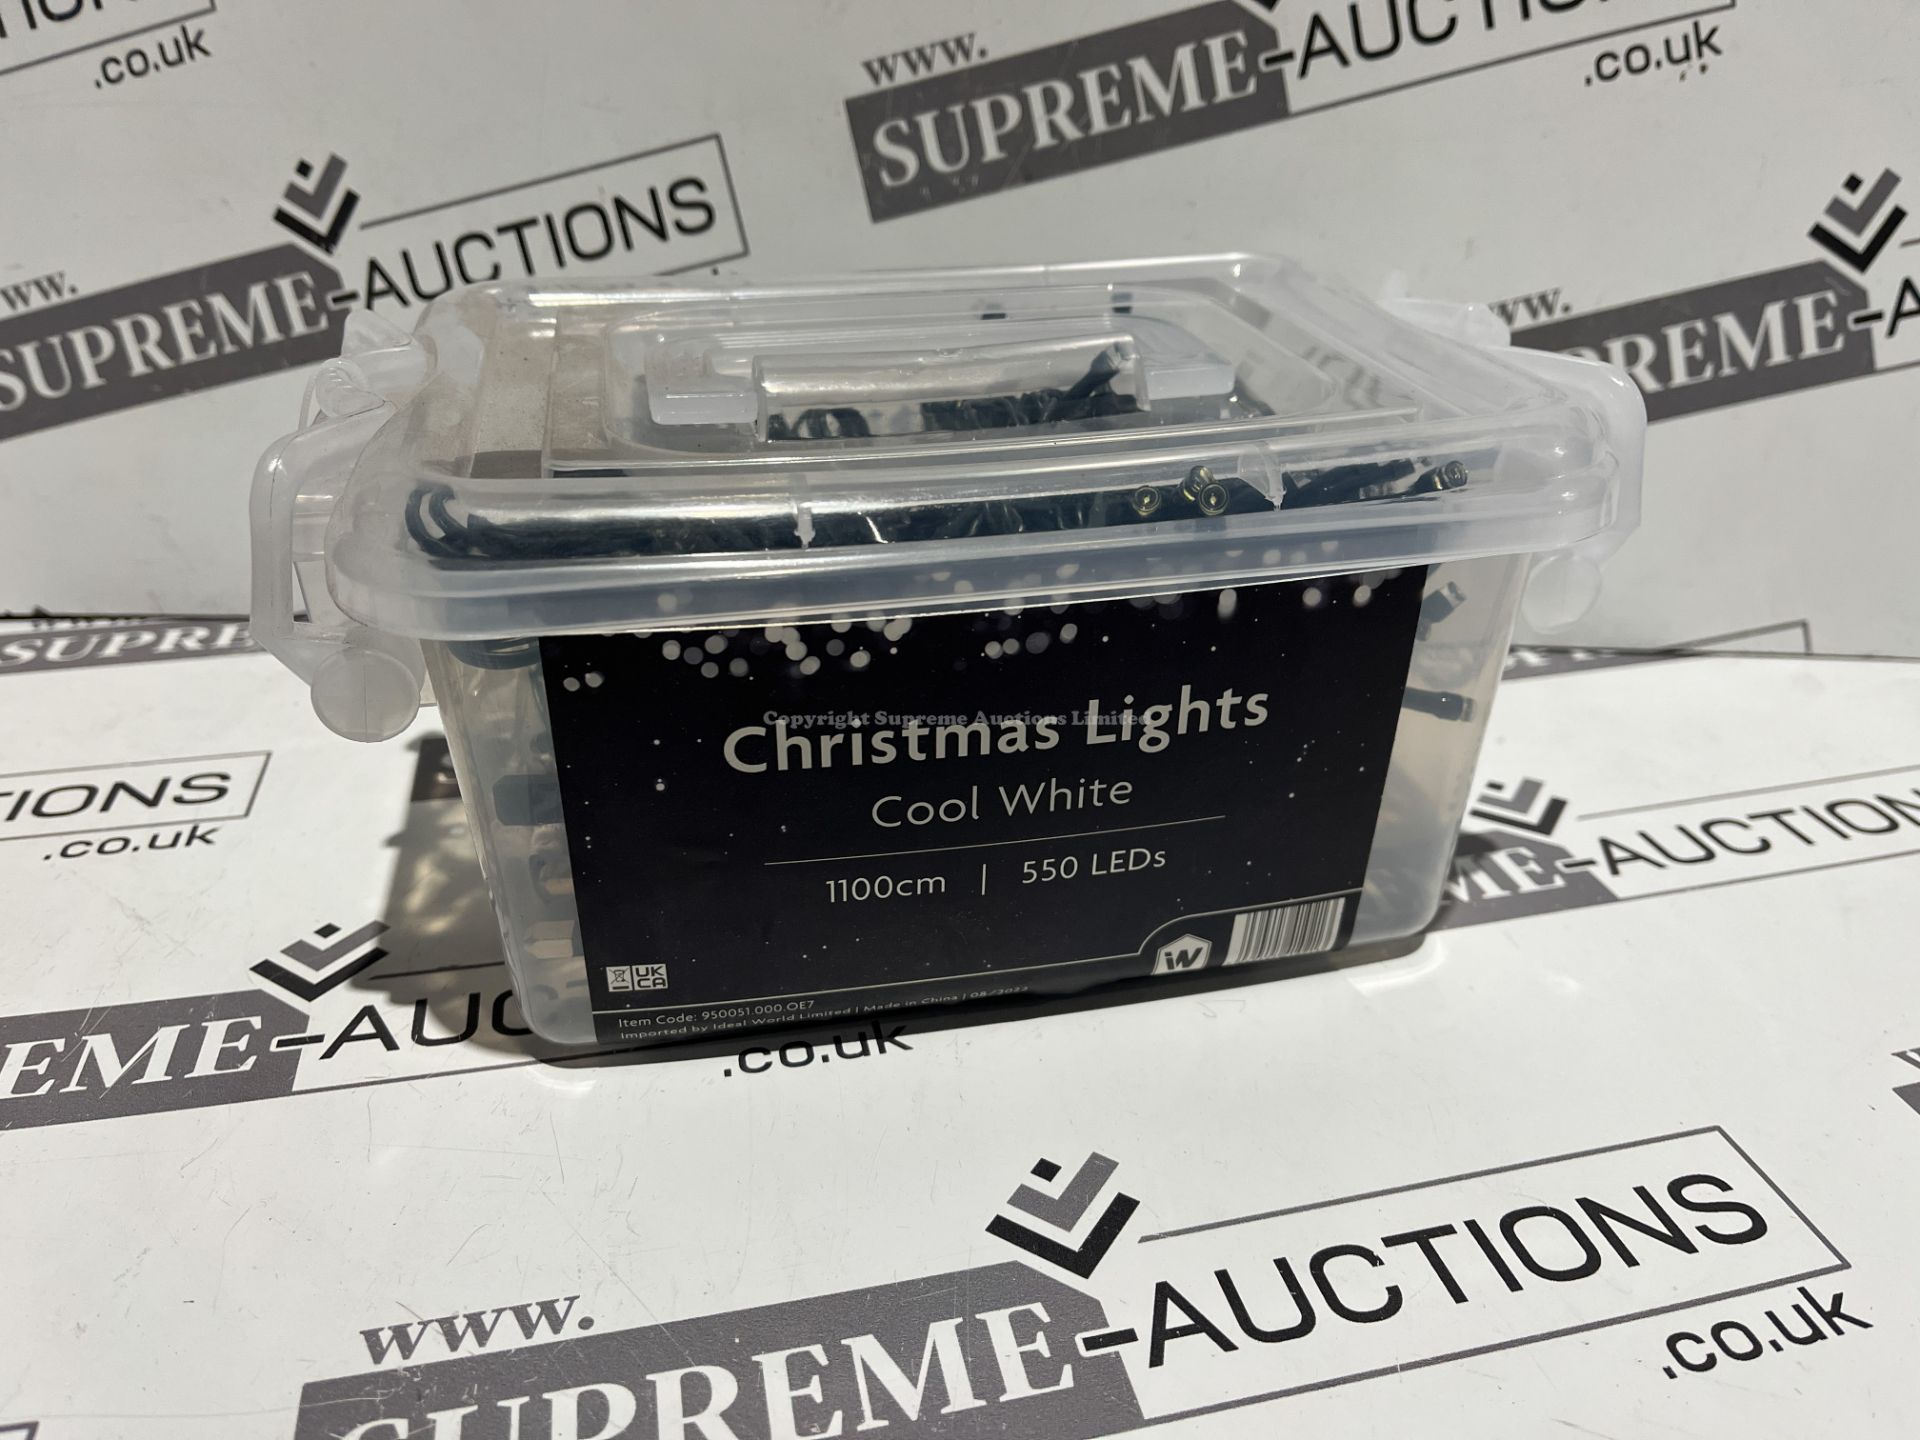 10 X BRAND NEW PACKS OF 1100CM 550 LED LUXURY CHRISTMAS LIGHTS R6-2